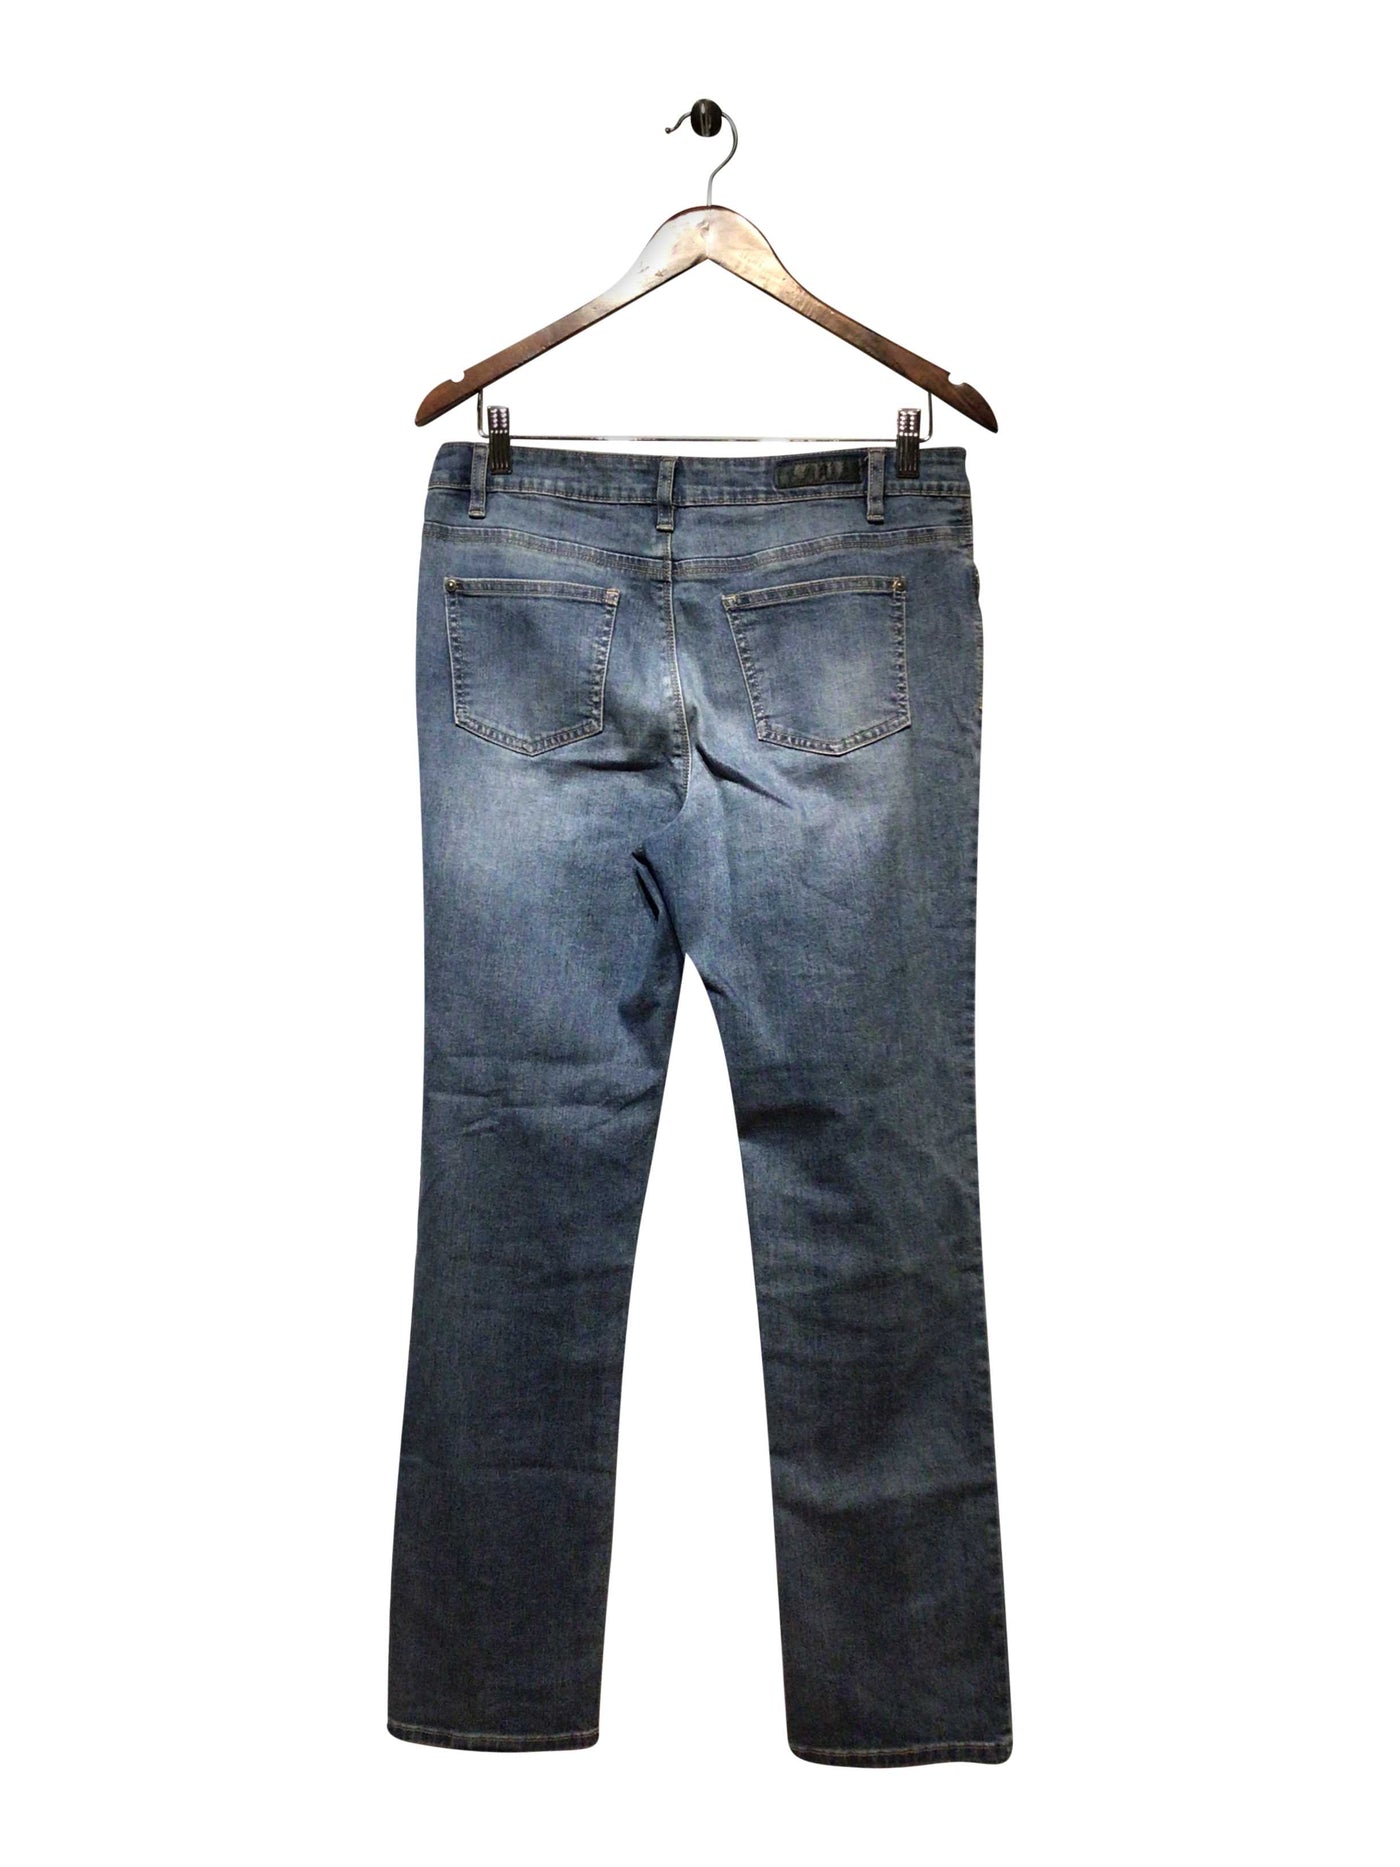 BUFFALO BY DAVID BITTON Regular fit Straight-legged Jean in Blue  -  10x30  34.99 Koop